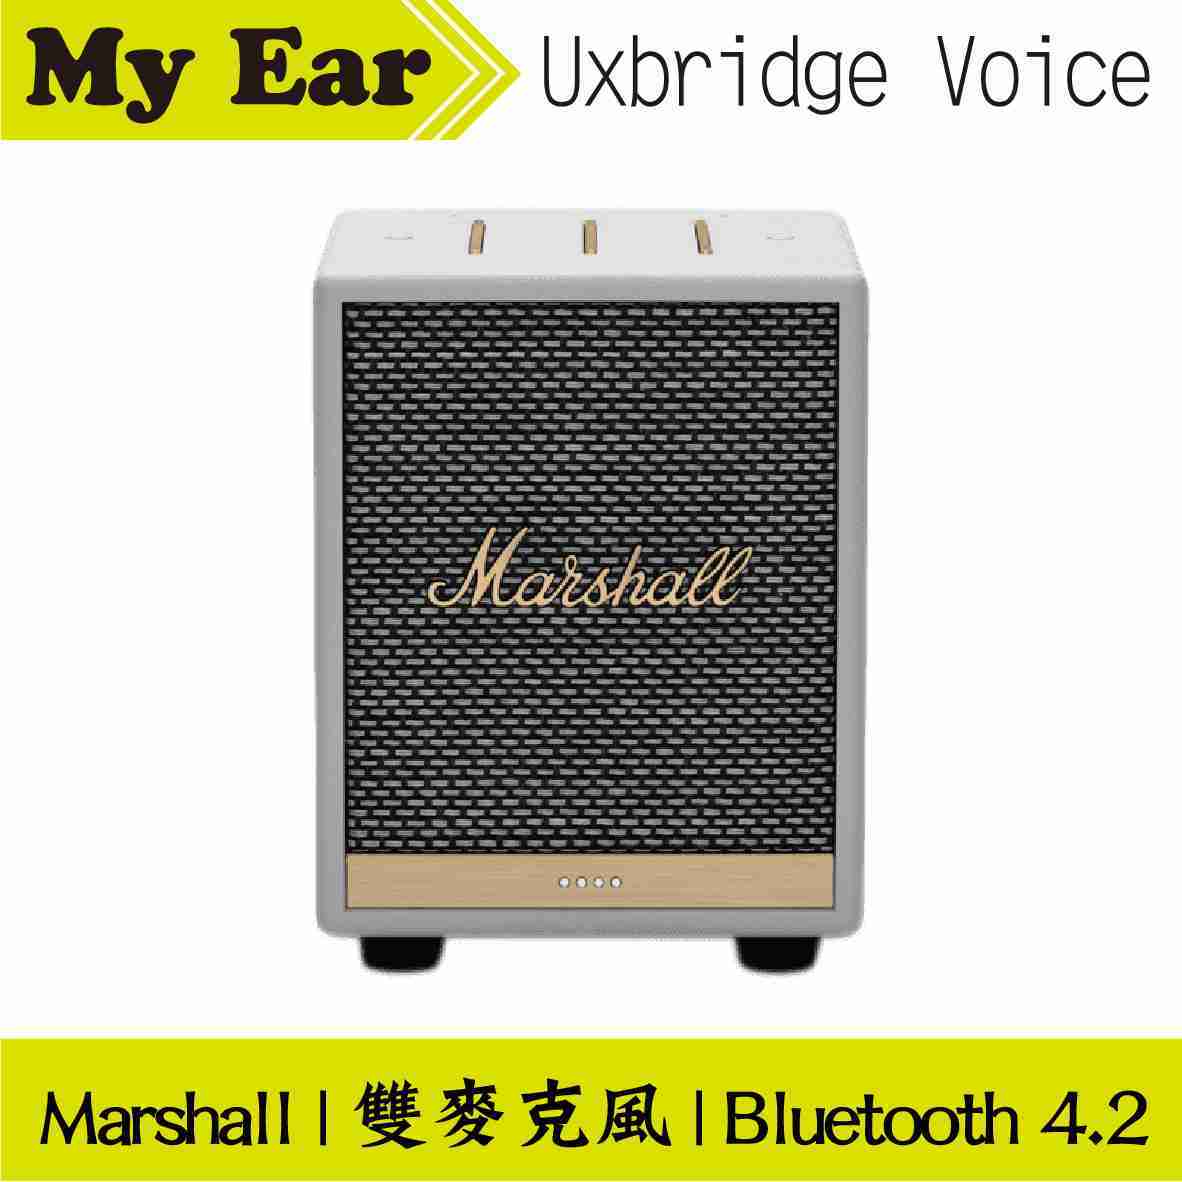 Marshall 馬歇爾 Uxbridge Voice 黑色 雙麥克風 藍芽 智慧 喇叭 | My Ear 耳機專門店